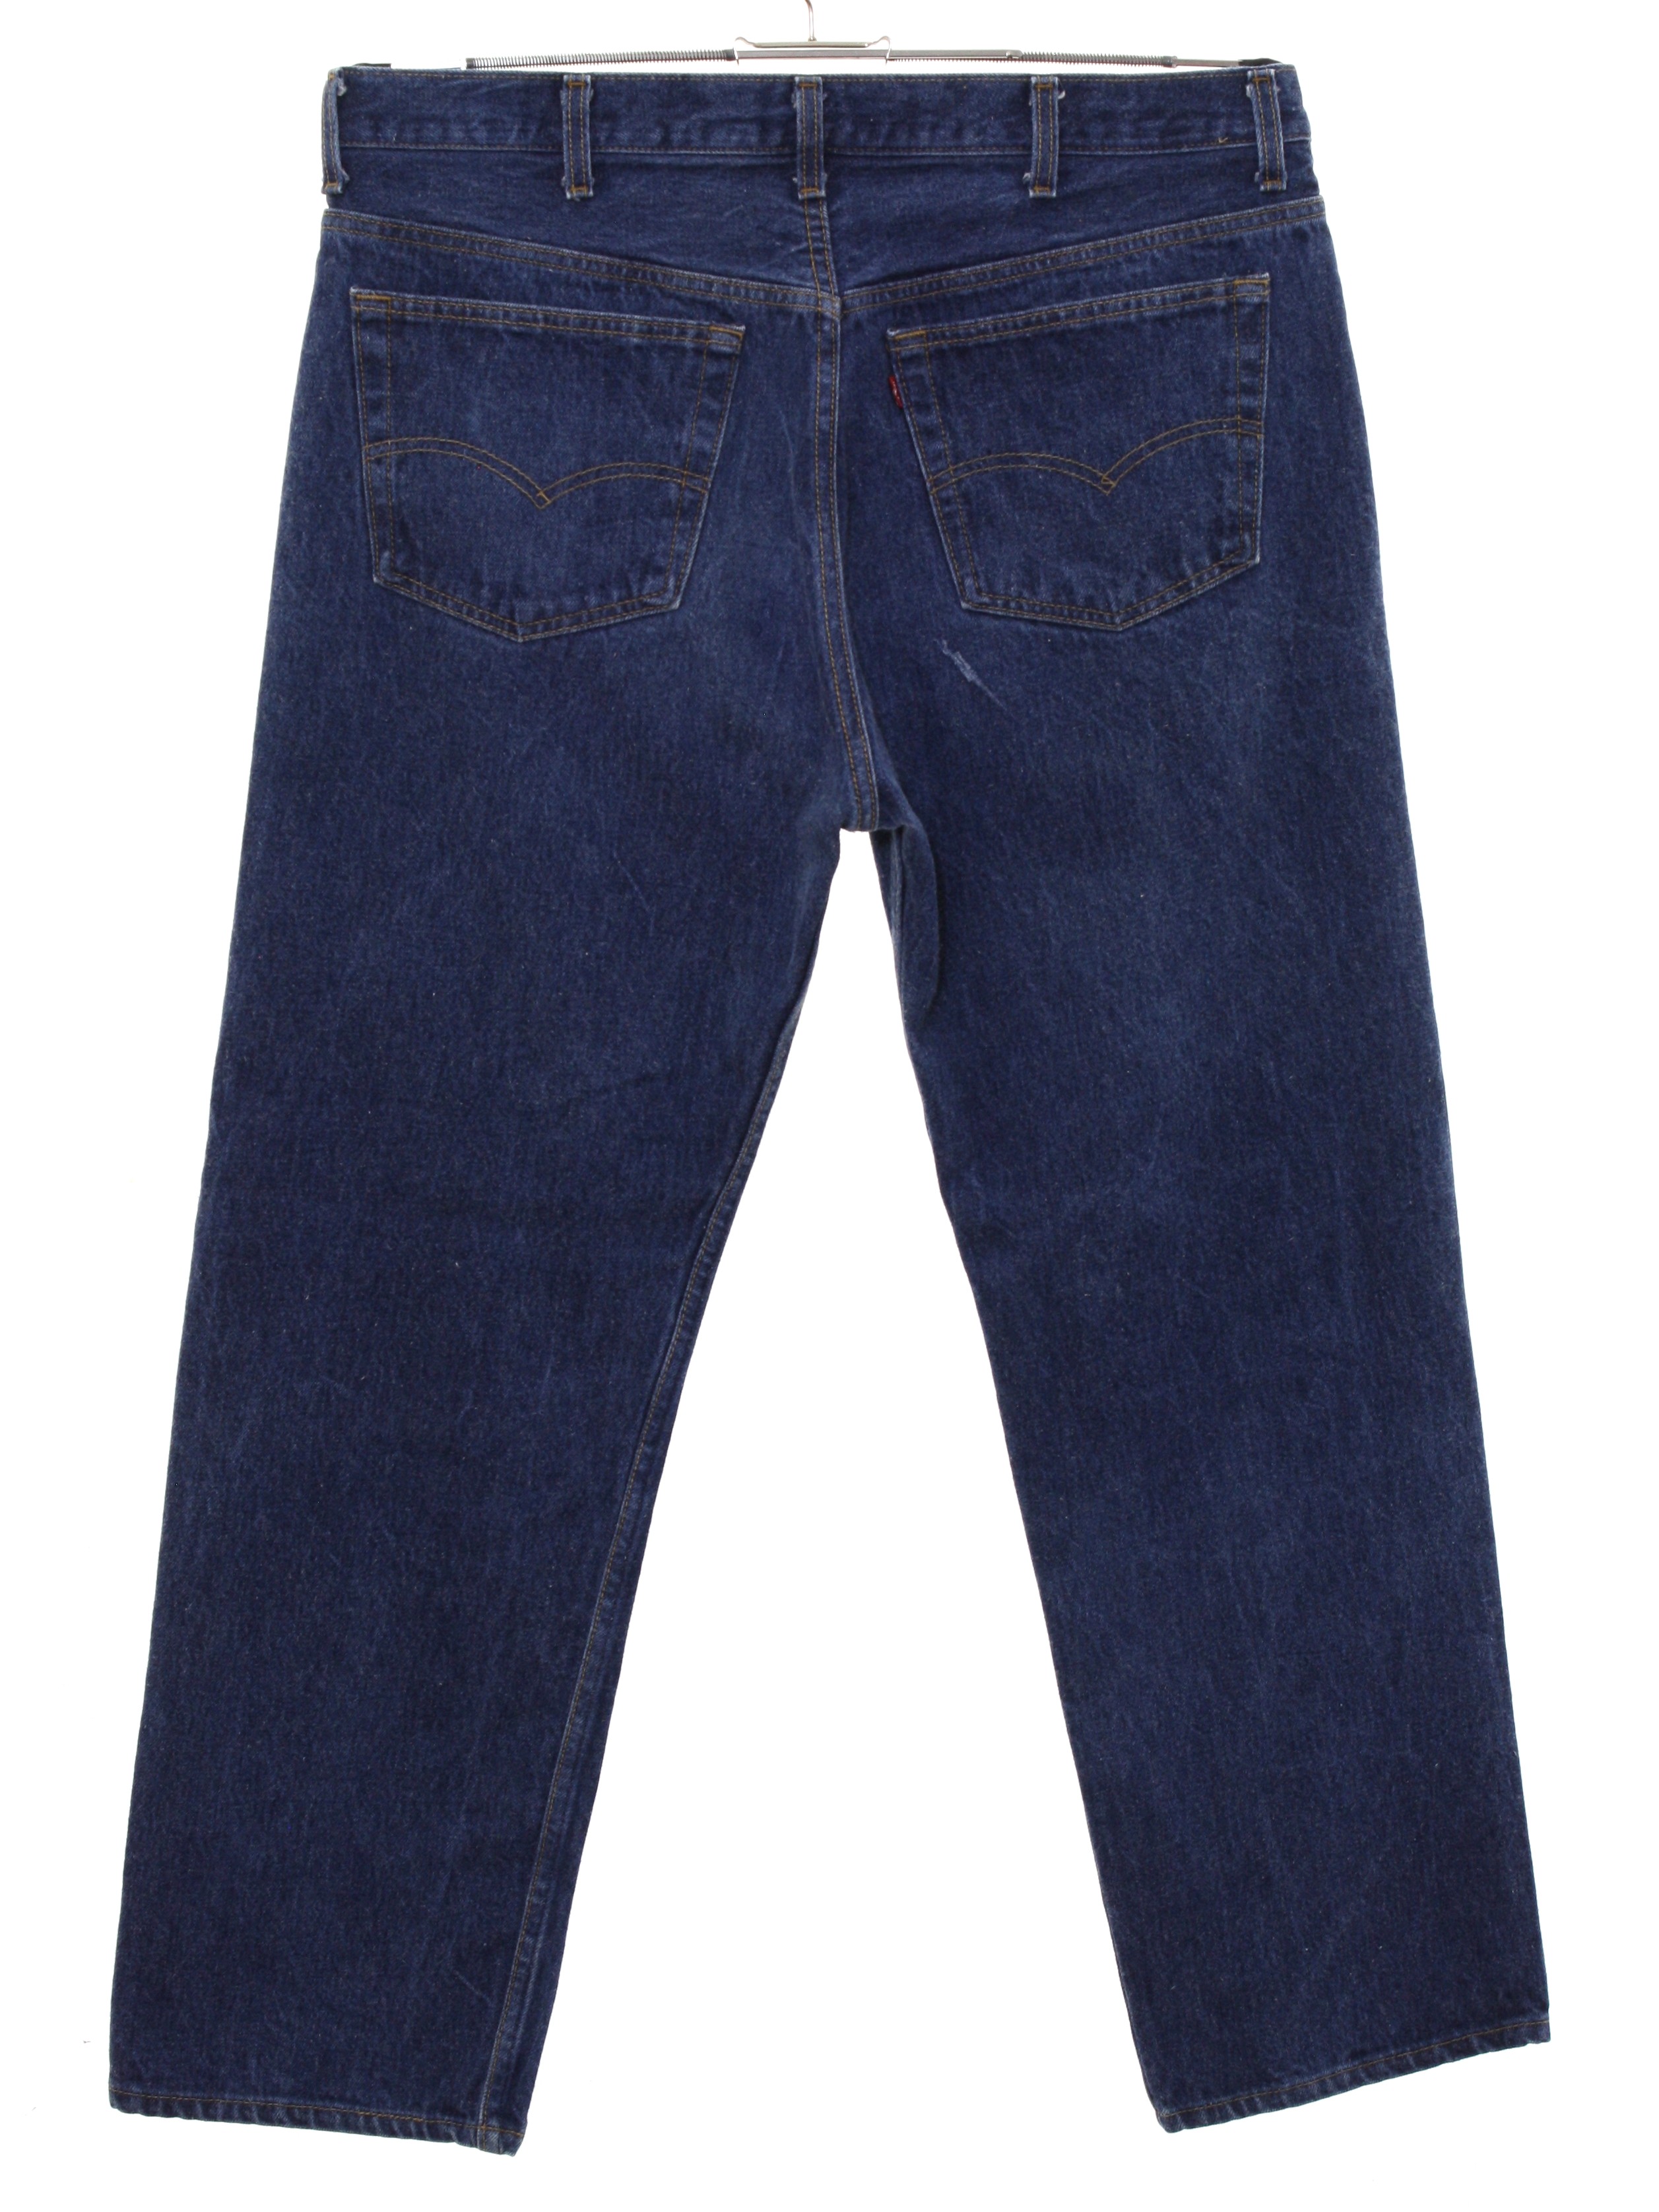 cheap 501 levis jeans